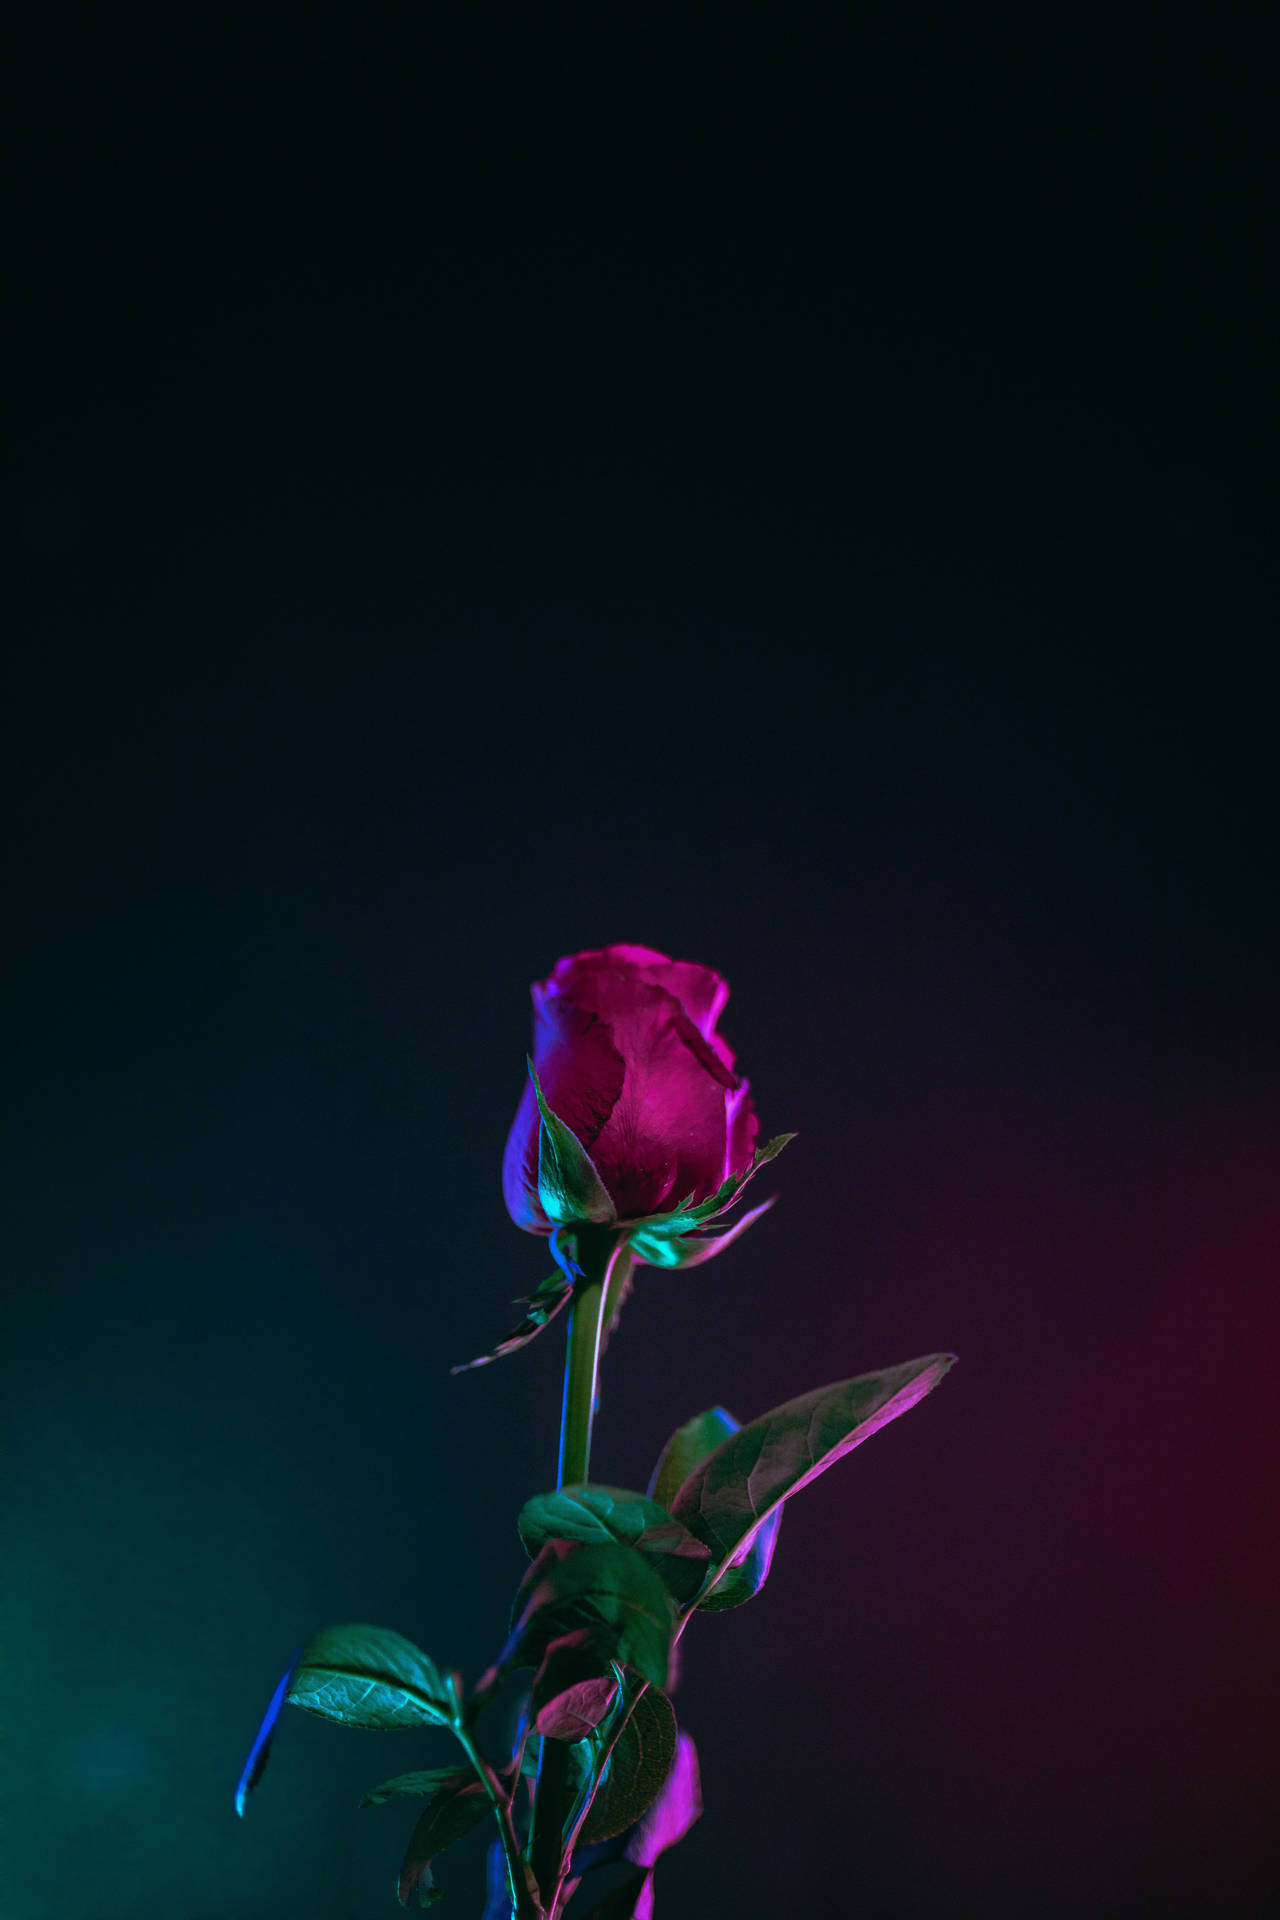 Iphone X Amoled Rose Close Up Background